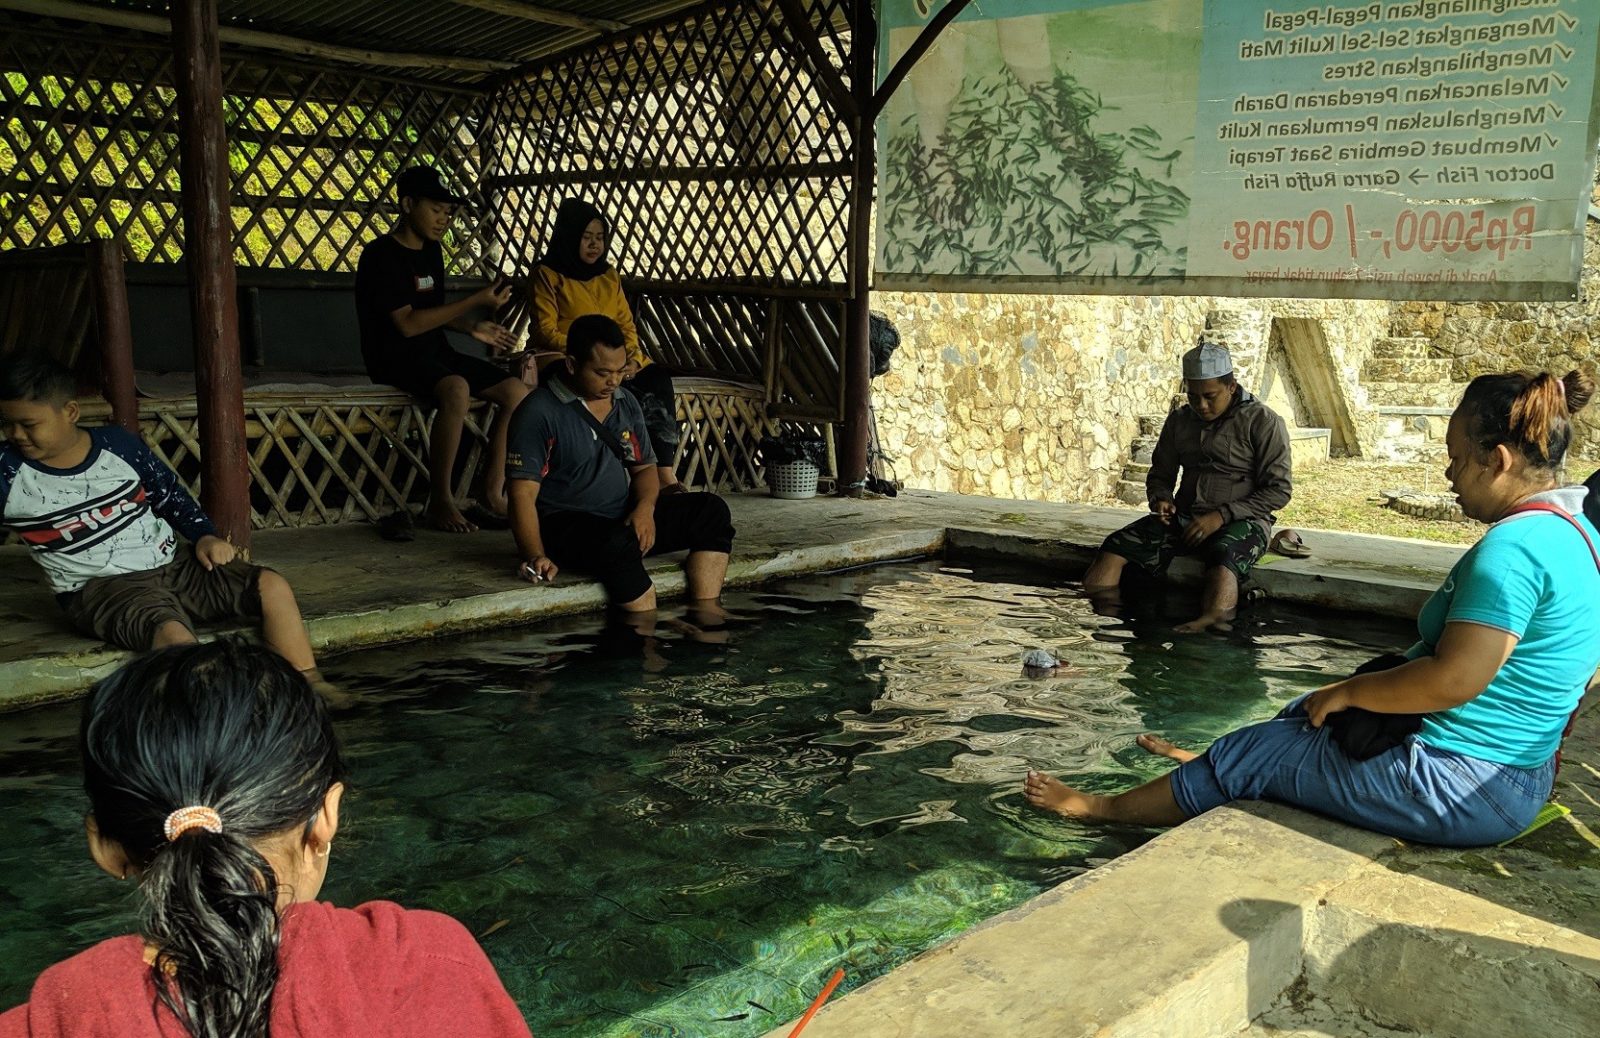 wisatawan melakukan terpai ikan di berbagai kolam khusus yang tersedia